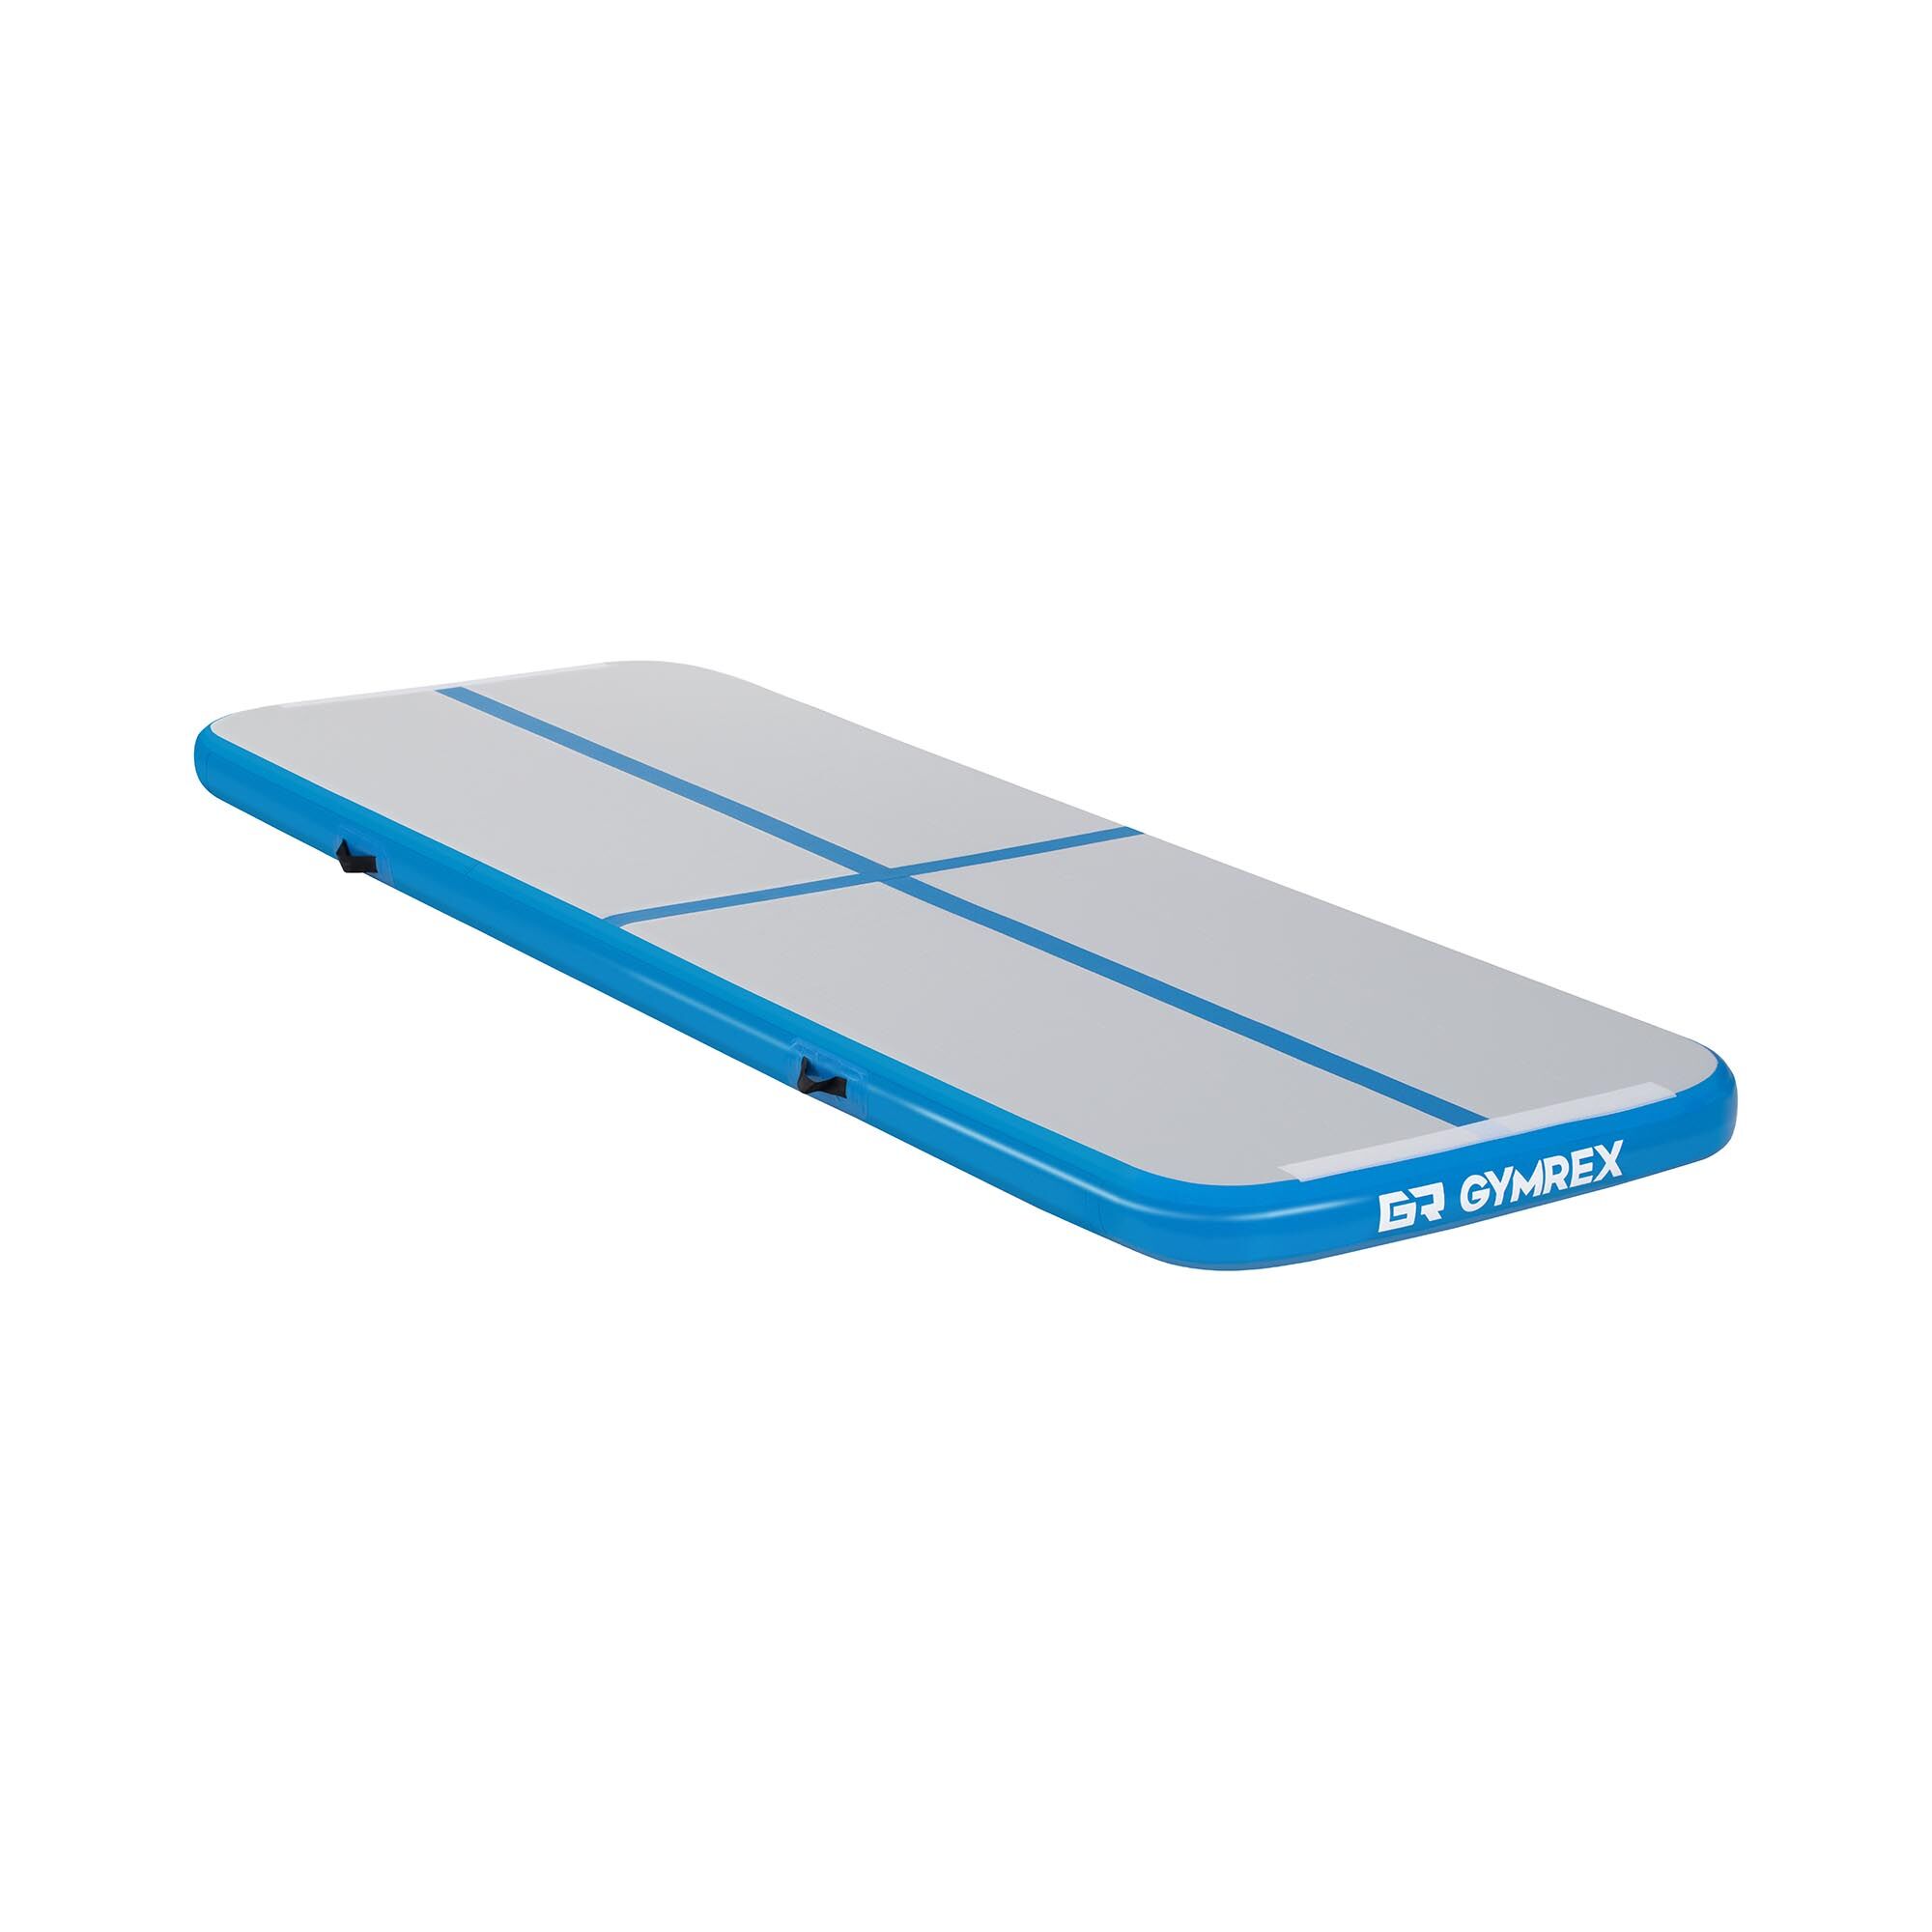 Gymrex Tappeto da ginnastica gonfiabile - Airtrack - 300 x 100 x 10 cm - 150 kg - blu/grigio GR-ATM1